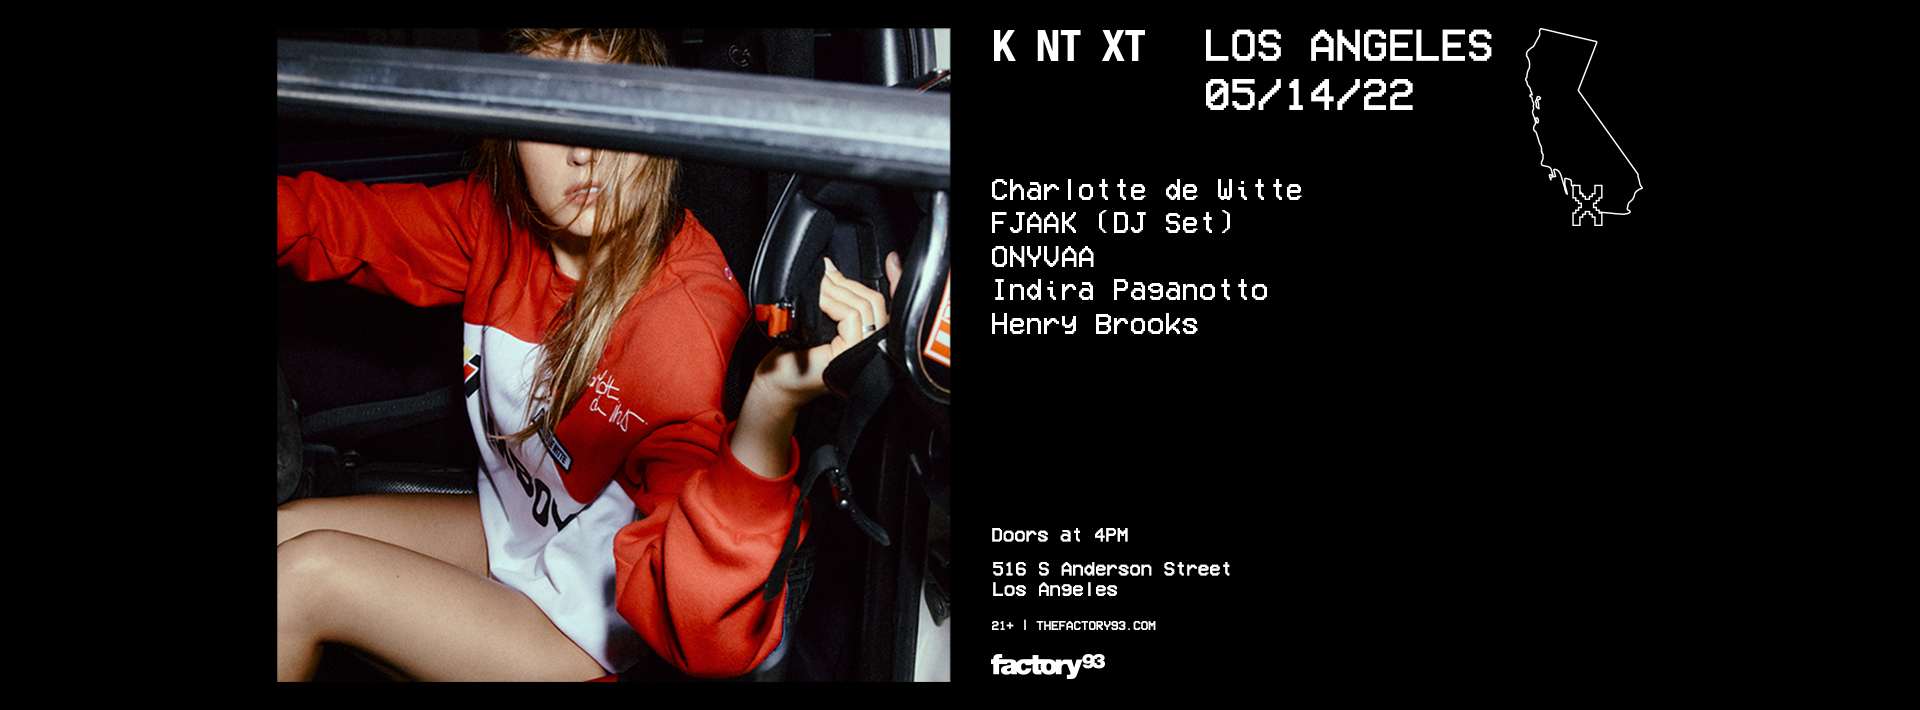 Charlotte de Witte presents KNTXT